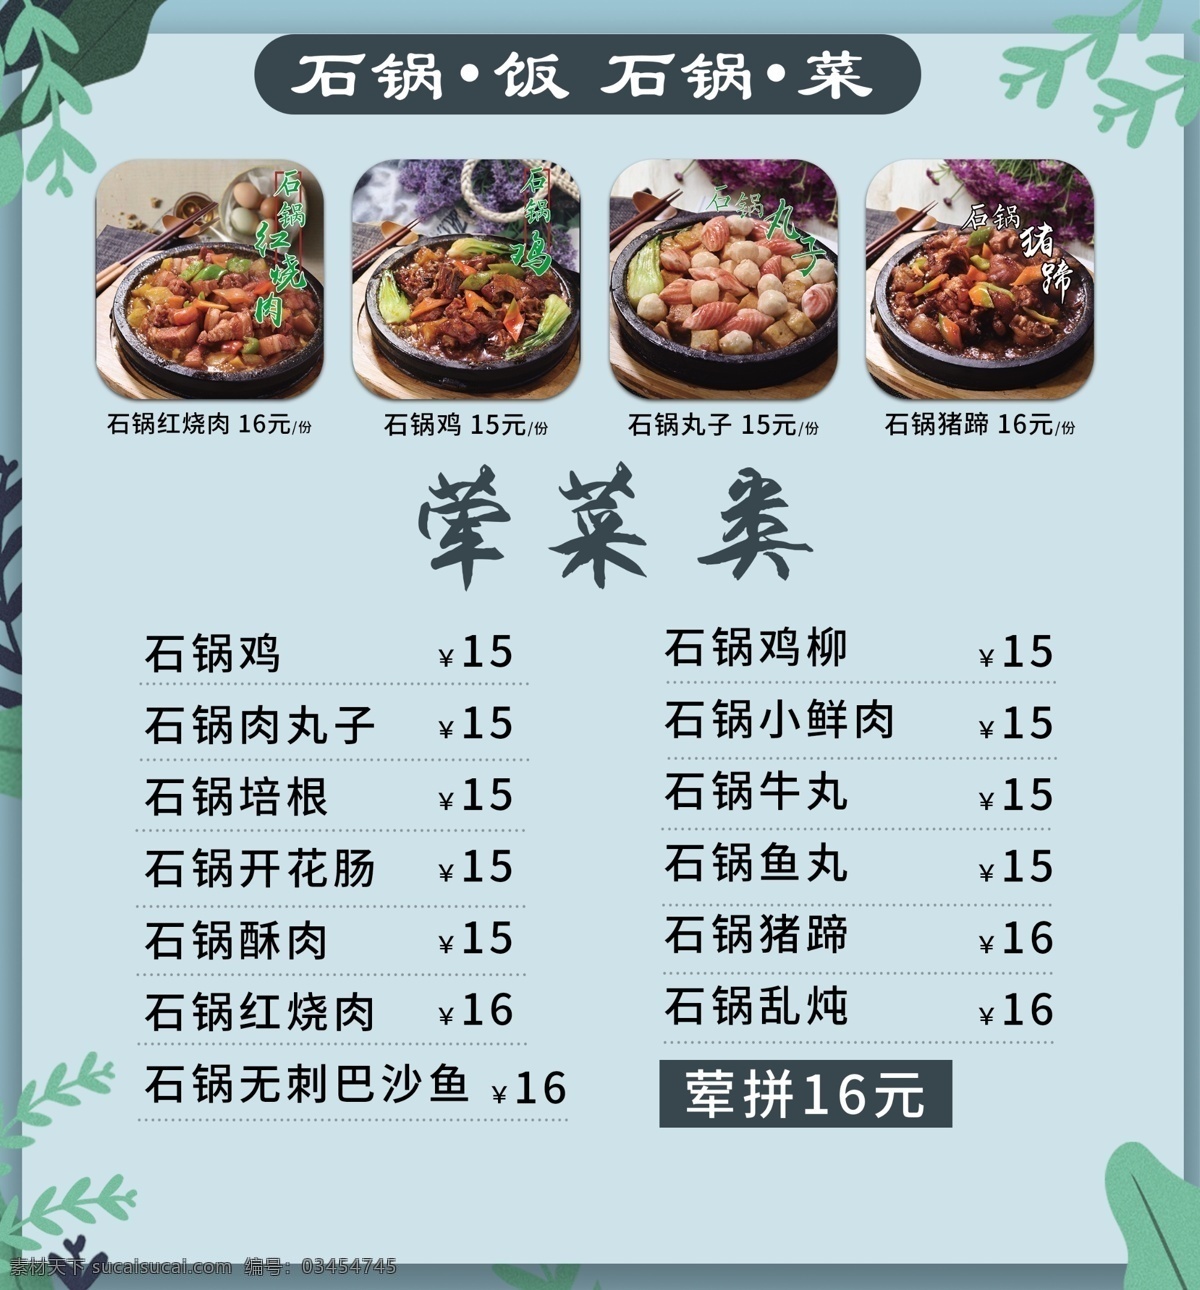 美食 石 锅 荤菜 价格 菜单 石锅 荤菜价格 灯片 海报彩页